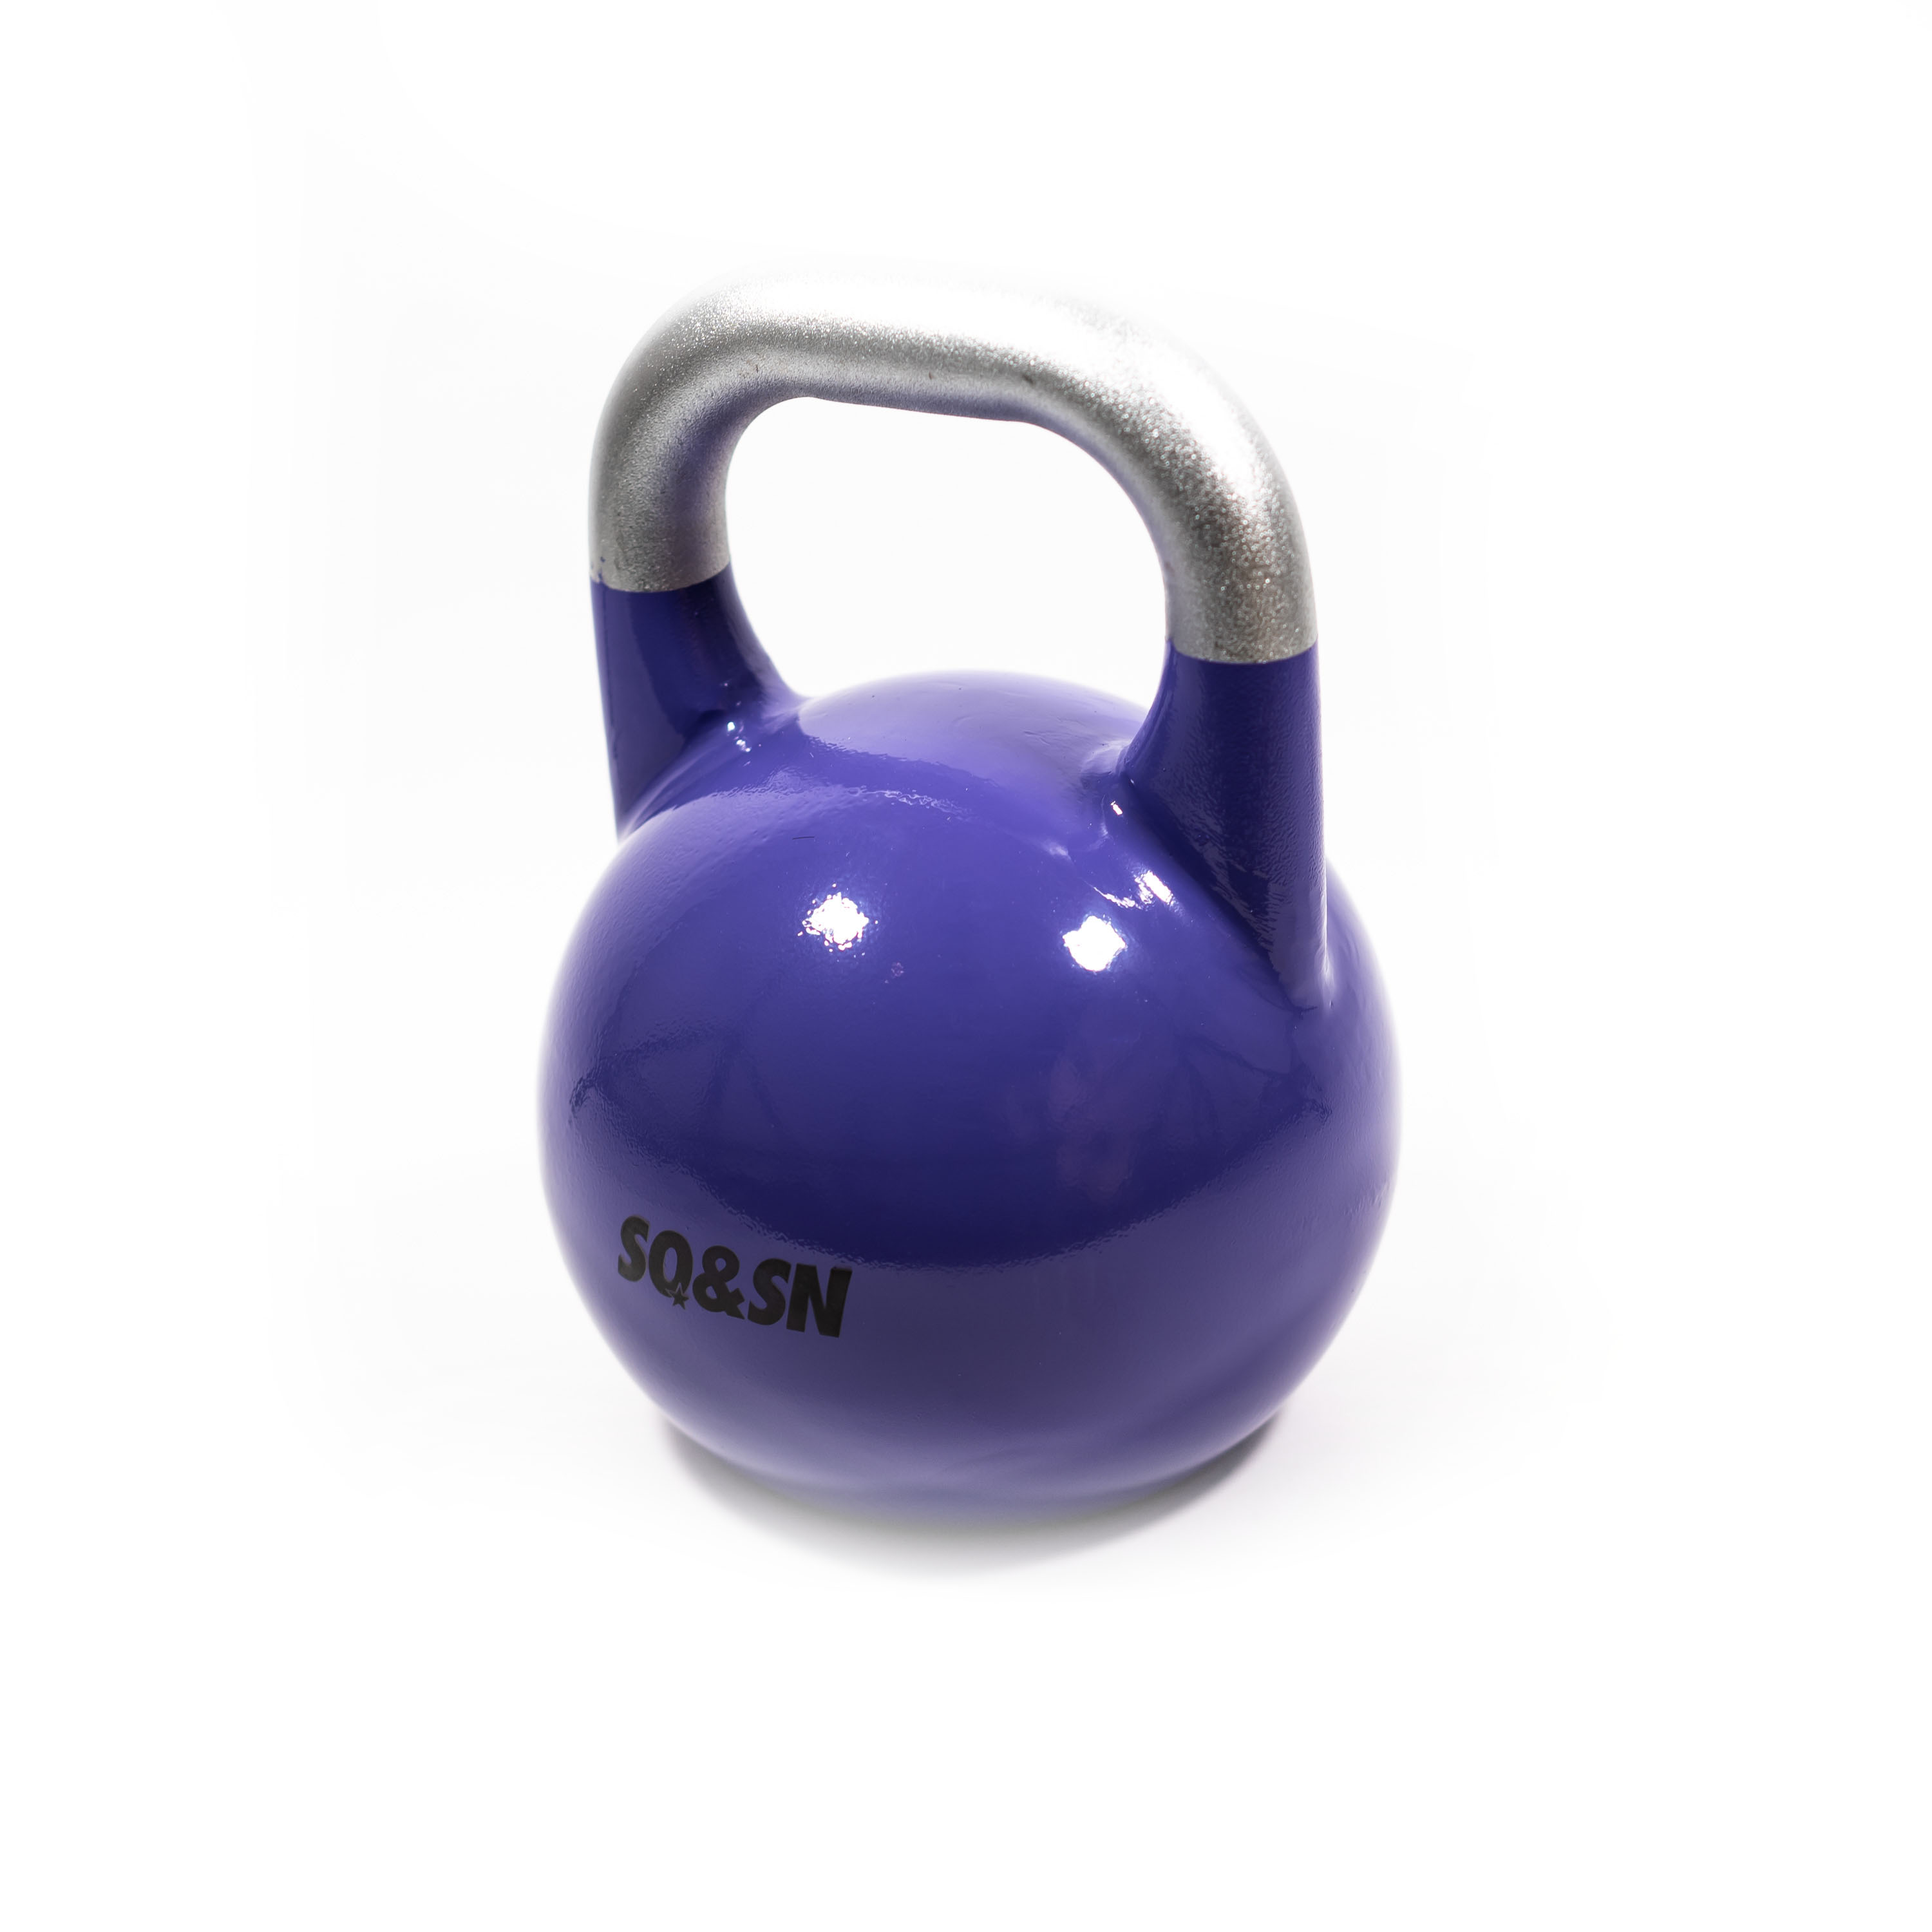 SQ&SN Competition Kettlebell (20 kg) i støbejern. Udstyr til crossfit træning, styrketræning og funktionel træning